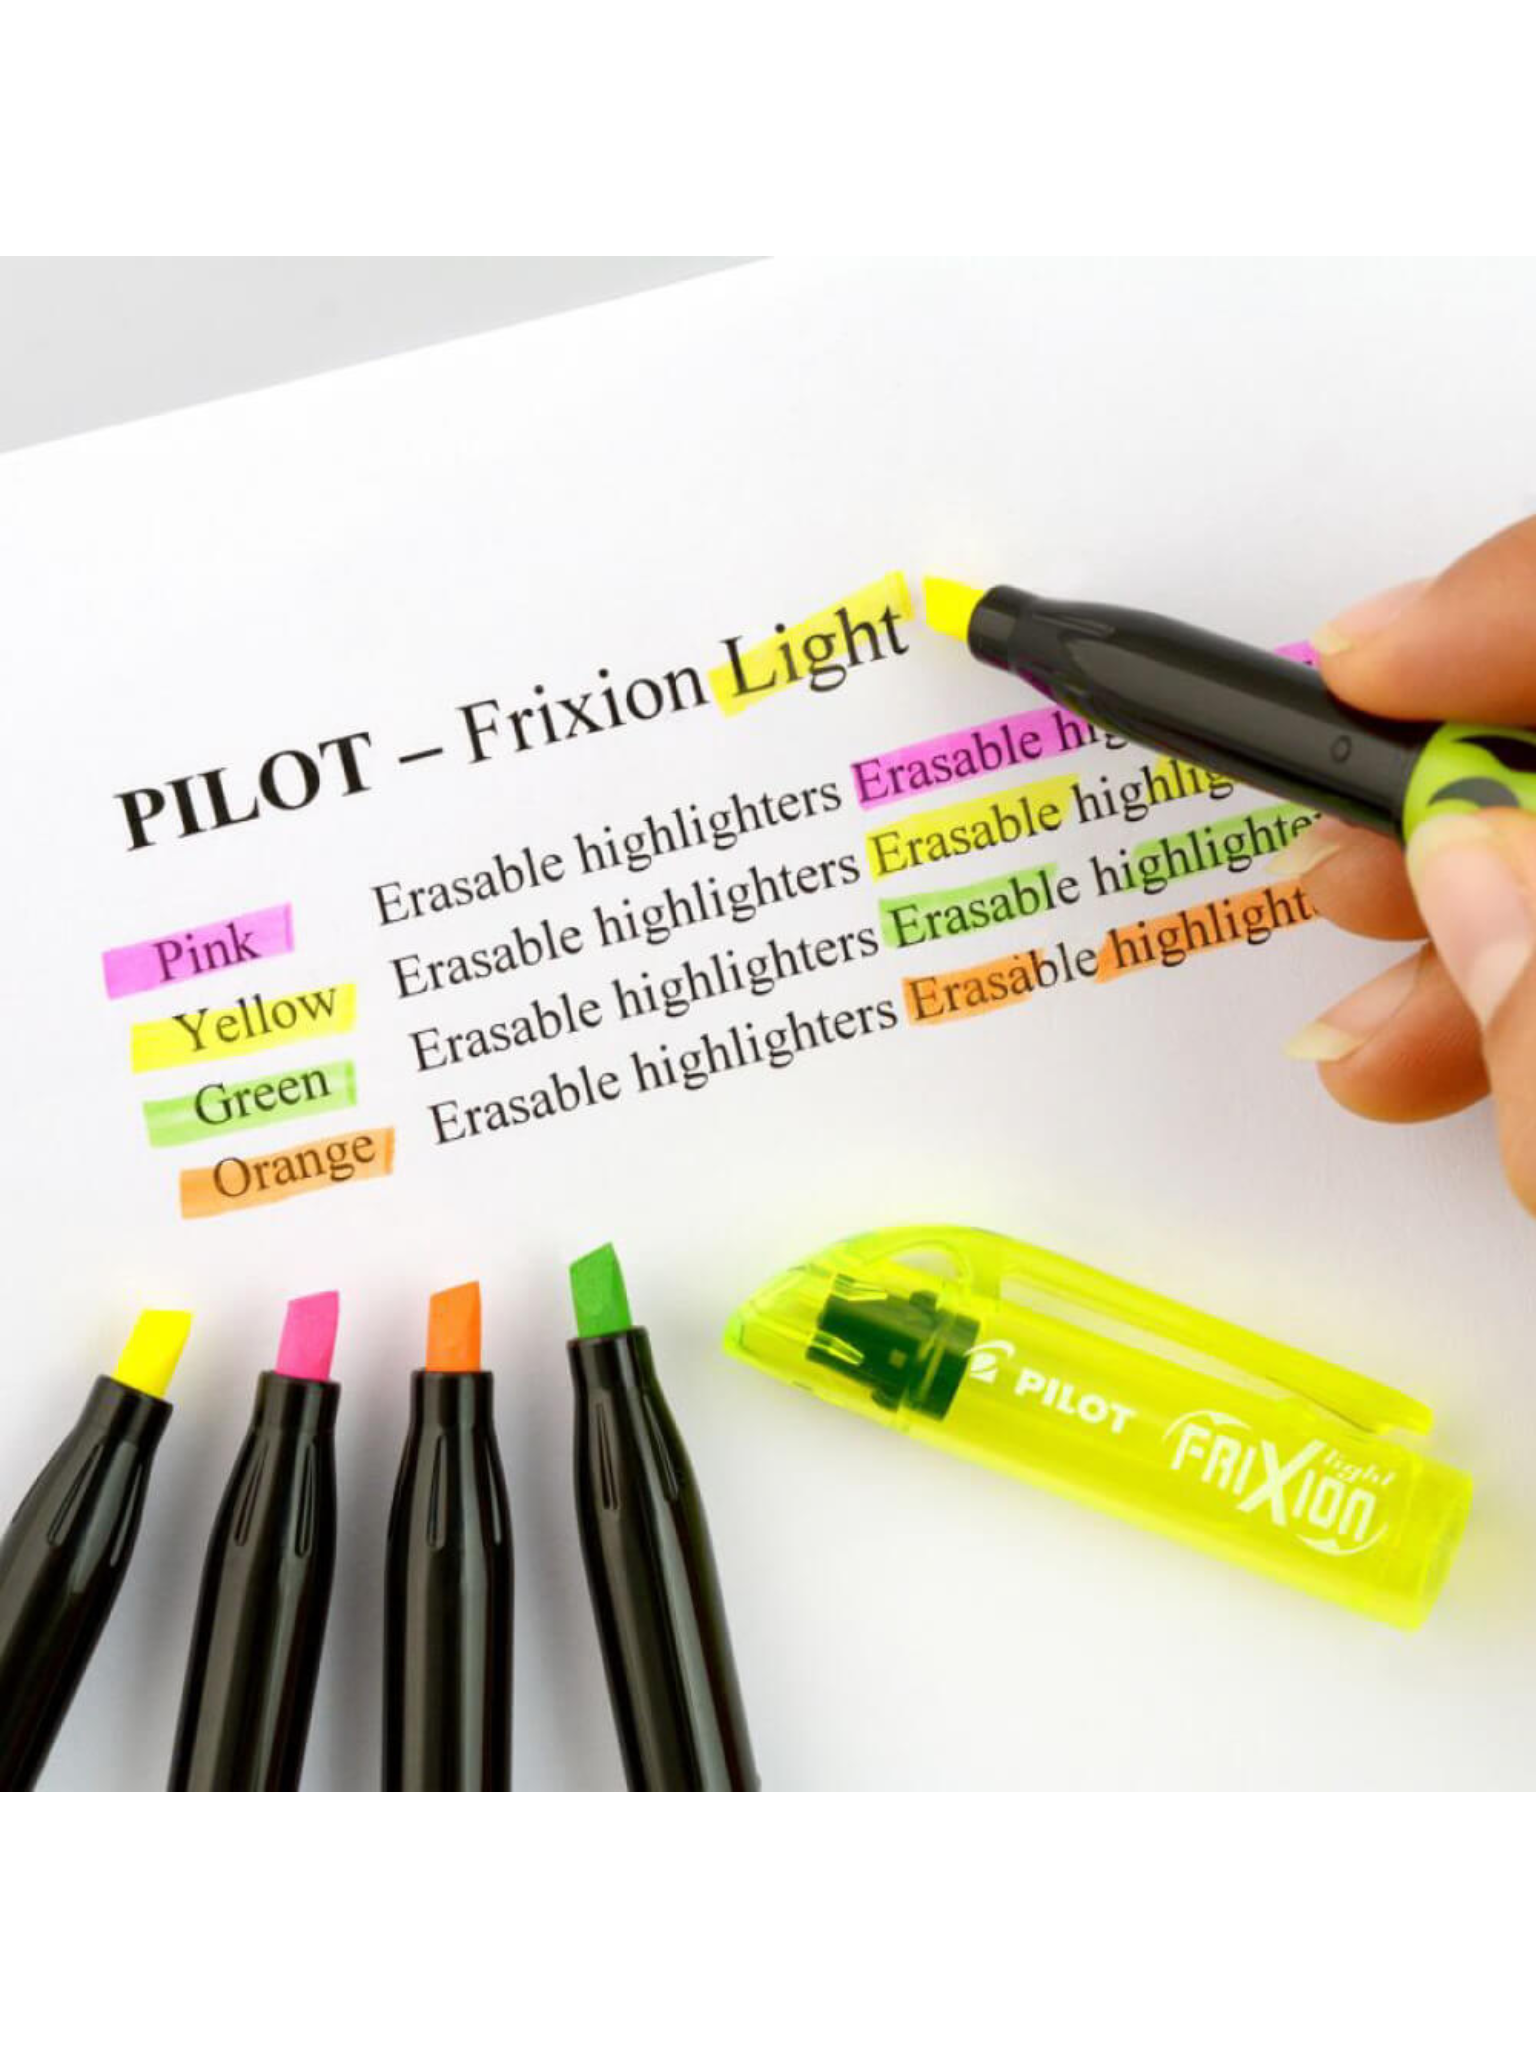 Pilot Frixion Fineliner - Juego de 5 rotuladores borrables (verde claro,  azul claro, rosa, naranja, morado)